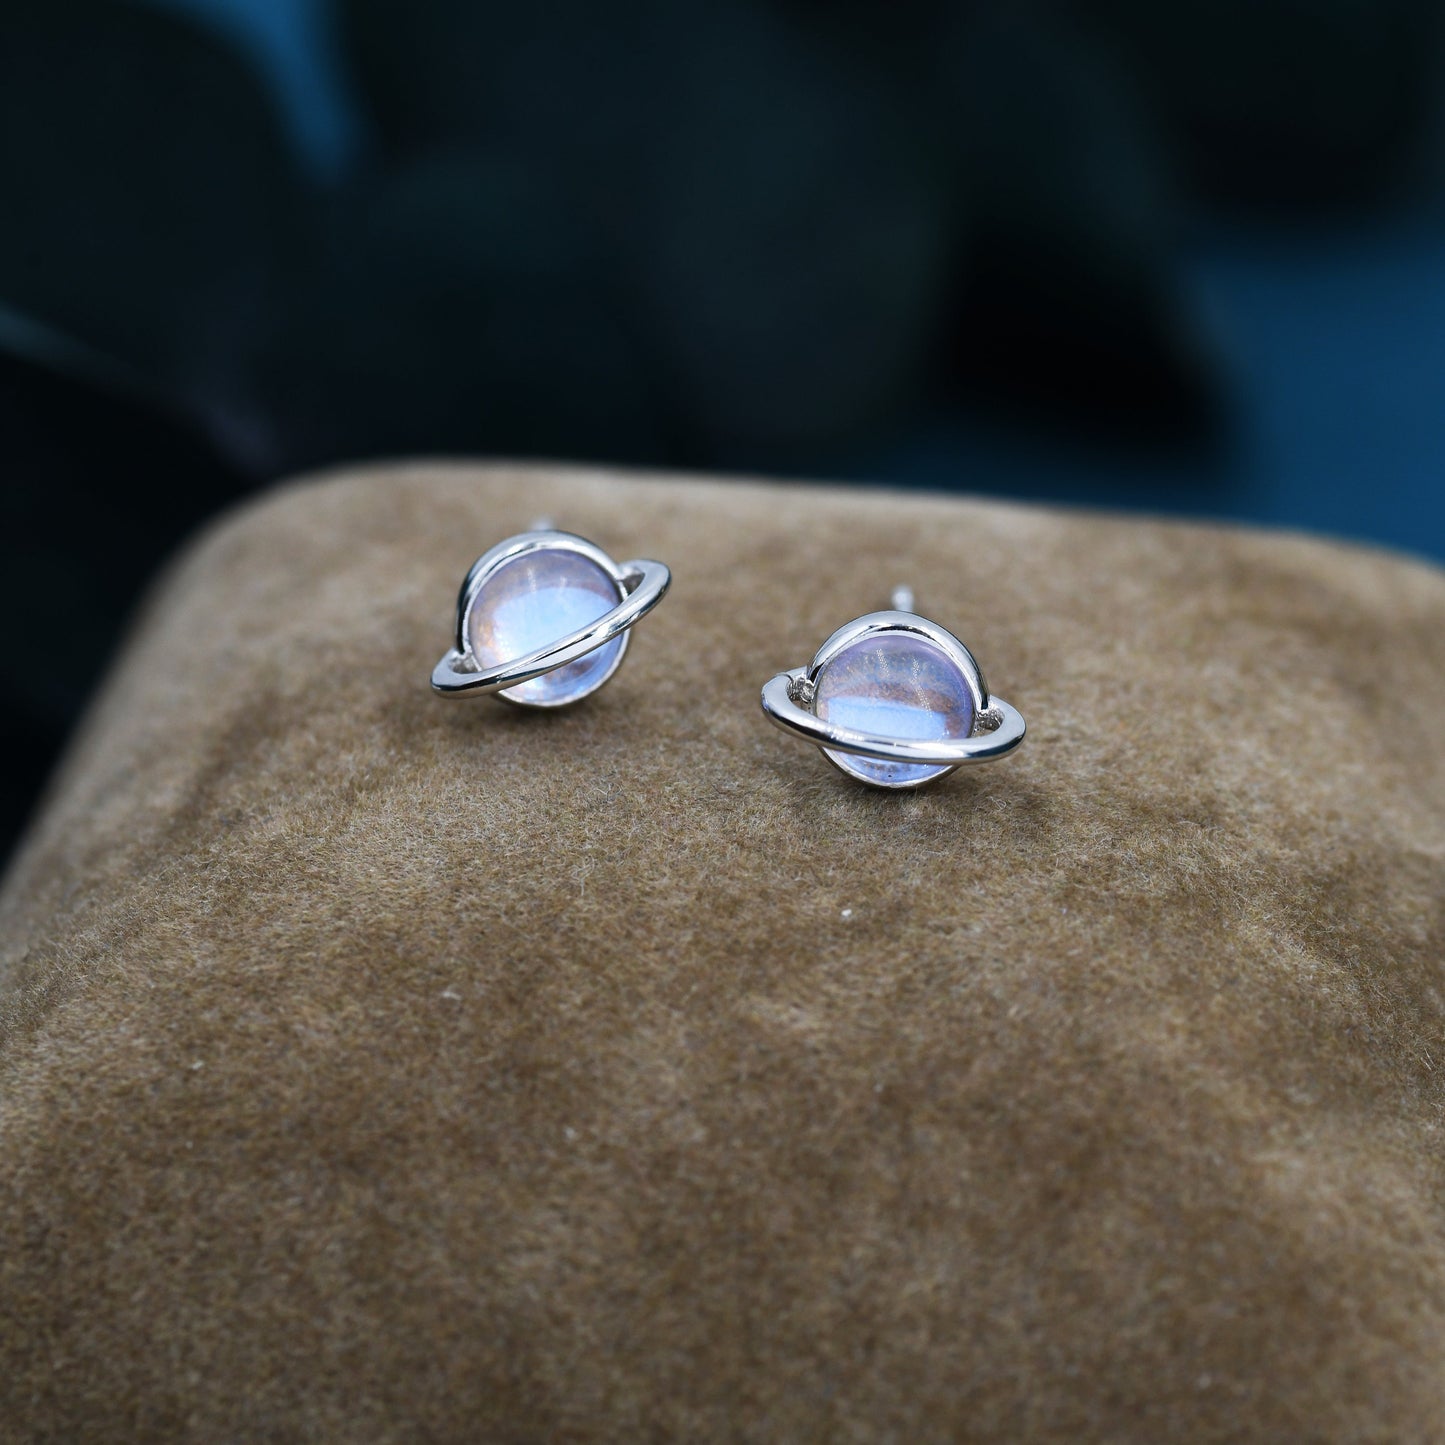 Moonstone Planet Stud Earrings in Sterling Silver, Lab Moonstone Planet Earrings, Opal Saturn Earrings